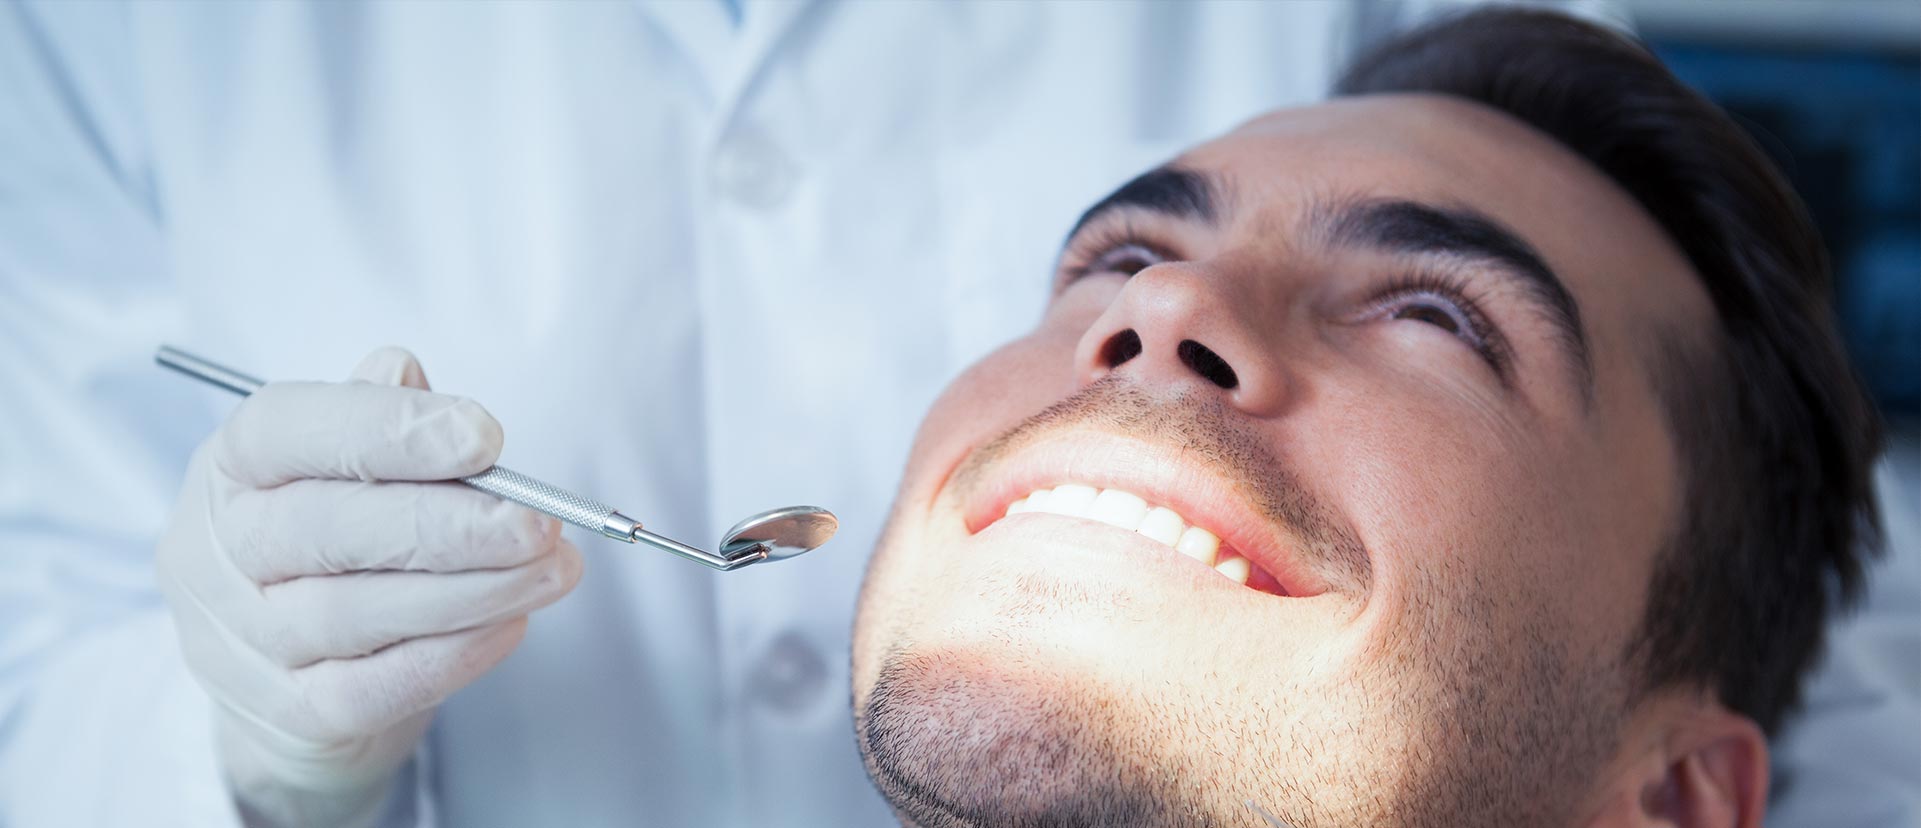 Man smiling at the dental